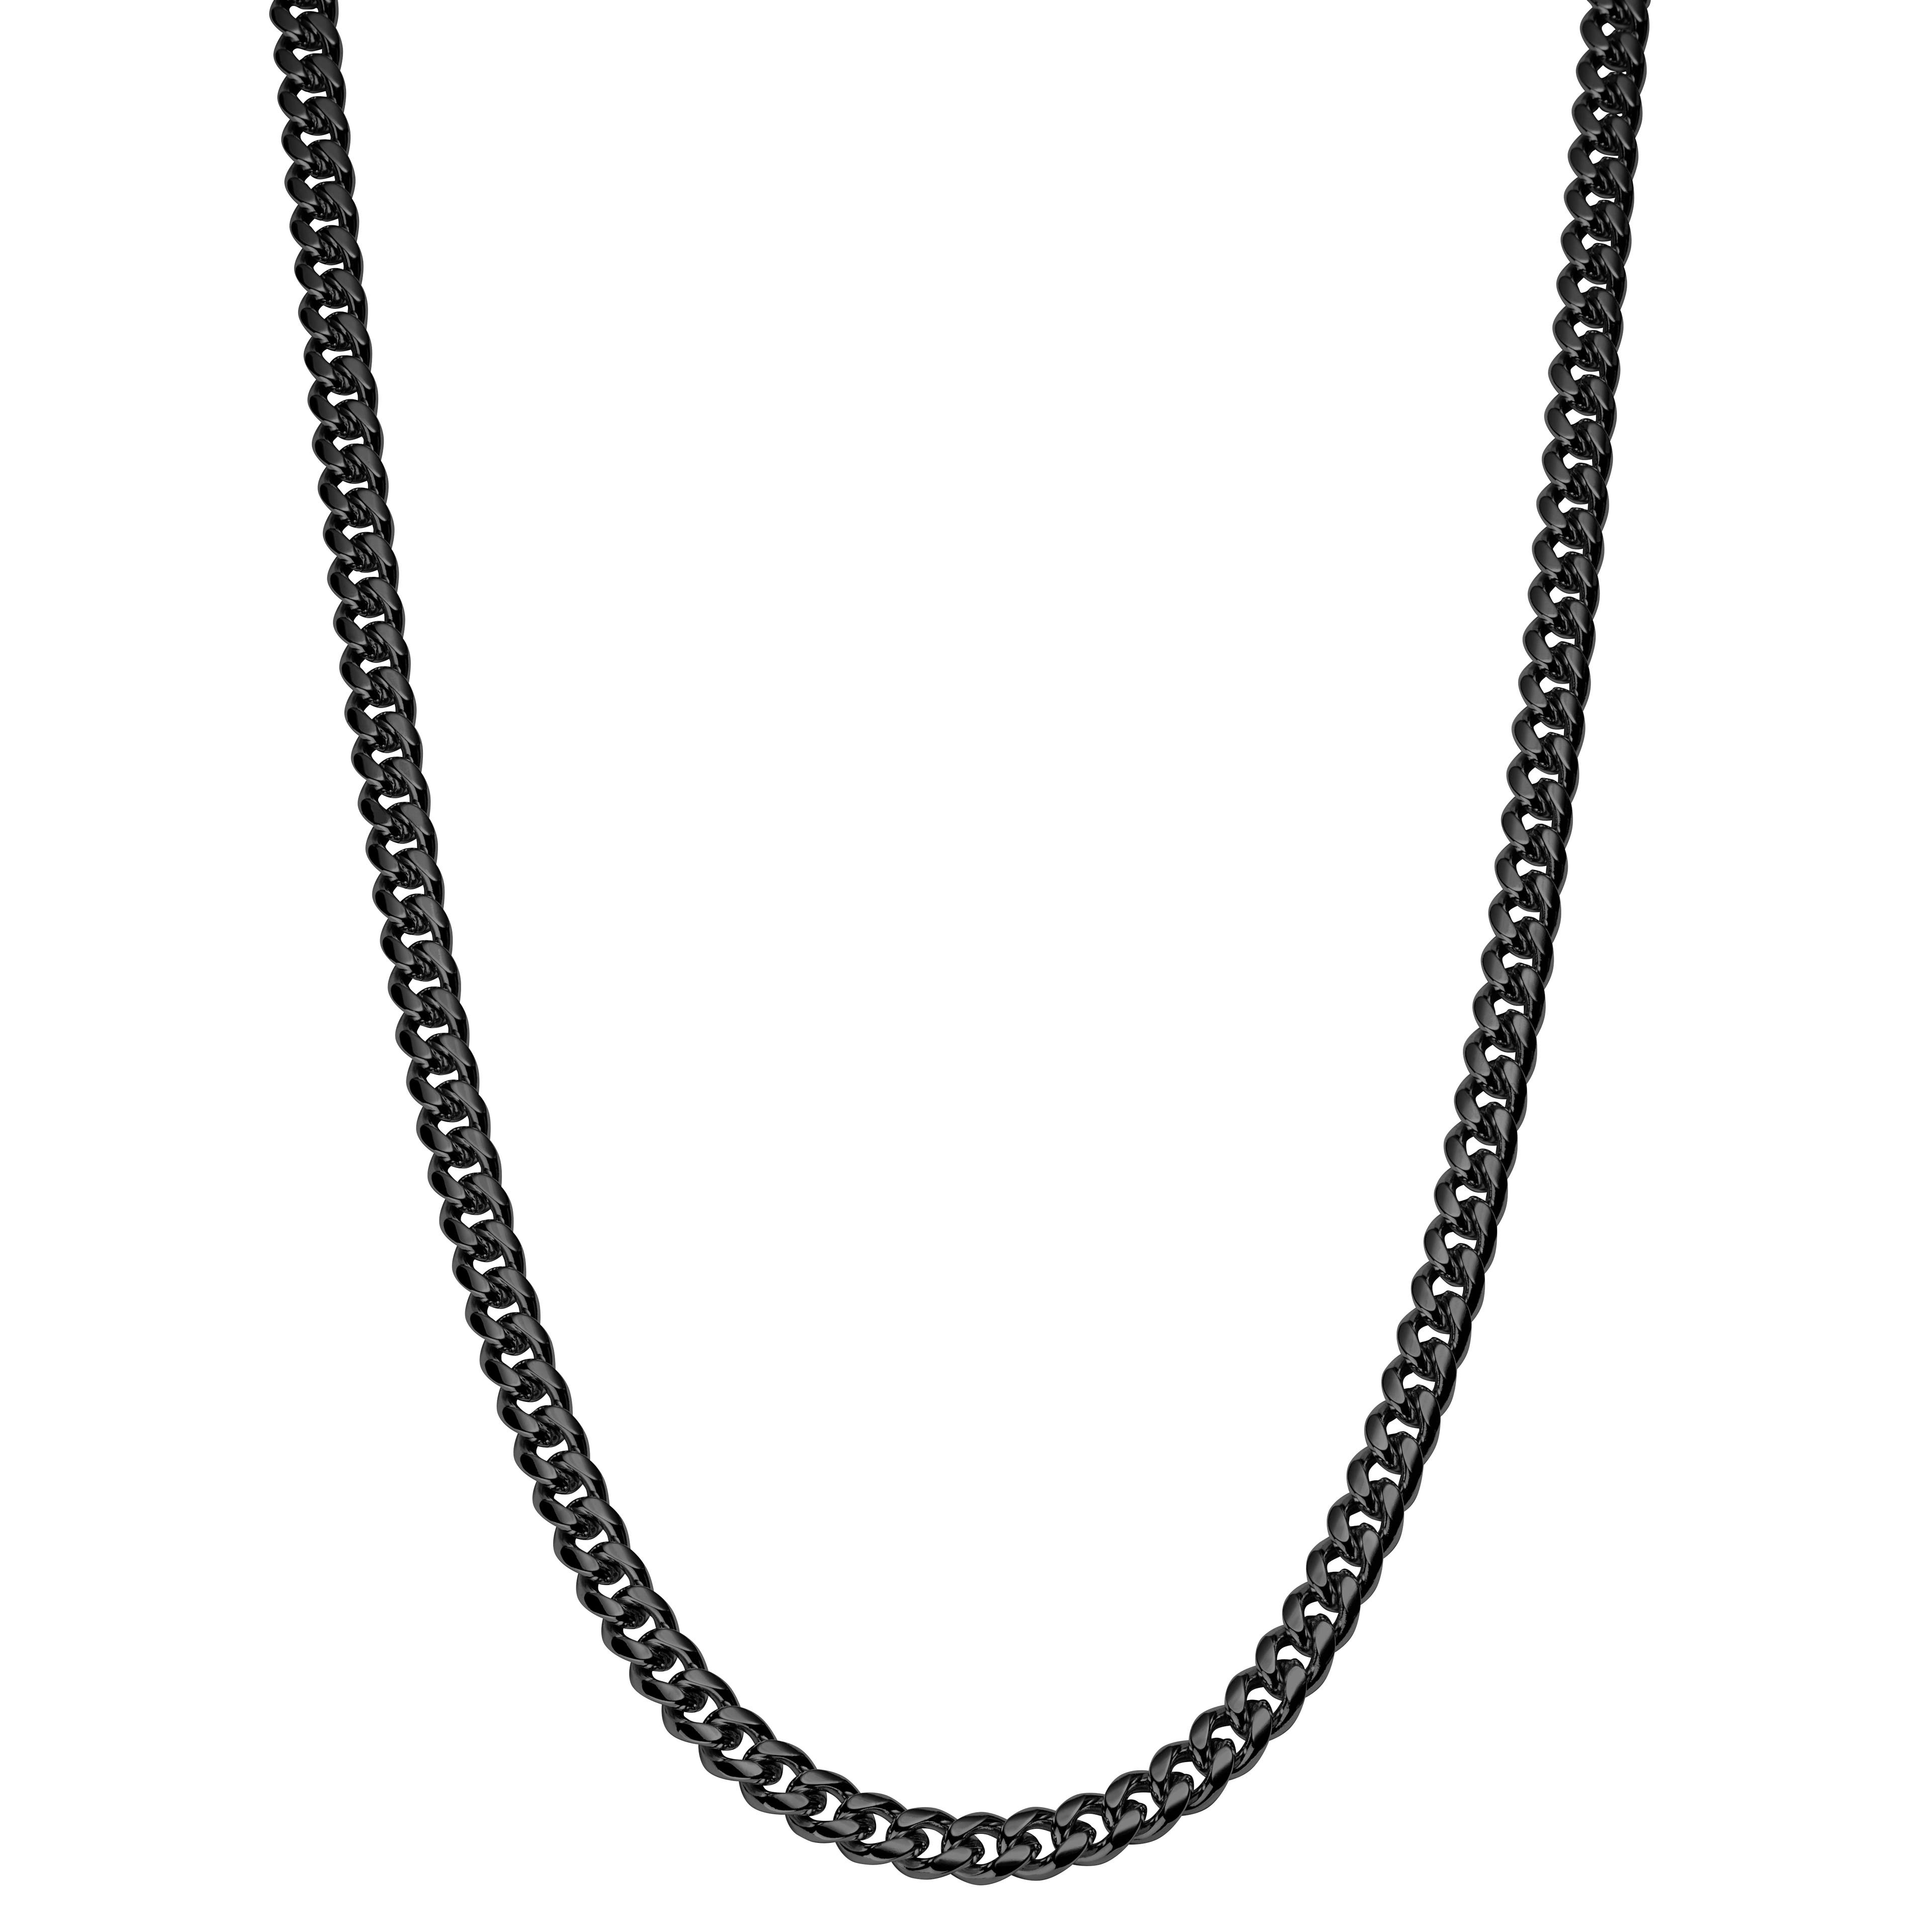 Schwarze Ketten Halskette 6mm 